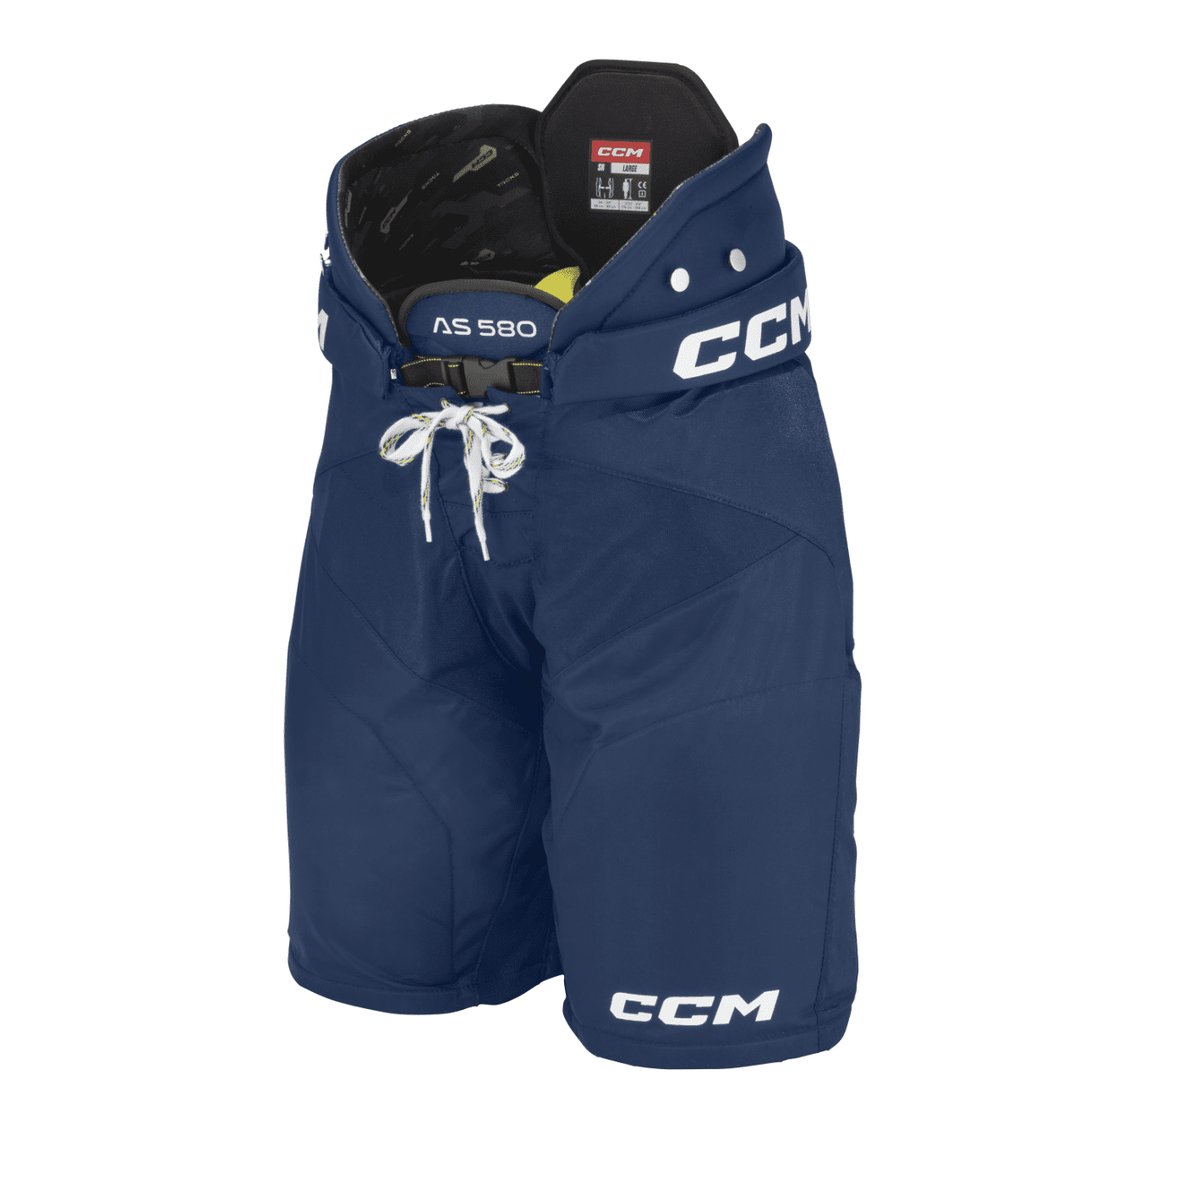 CCM Tacks AS 580 Ice Hockey Shorts